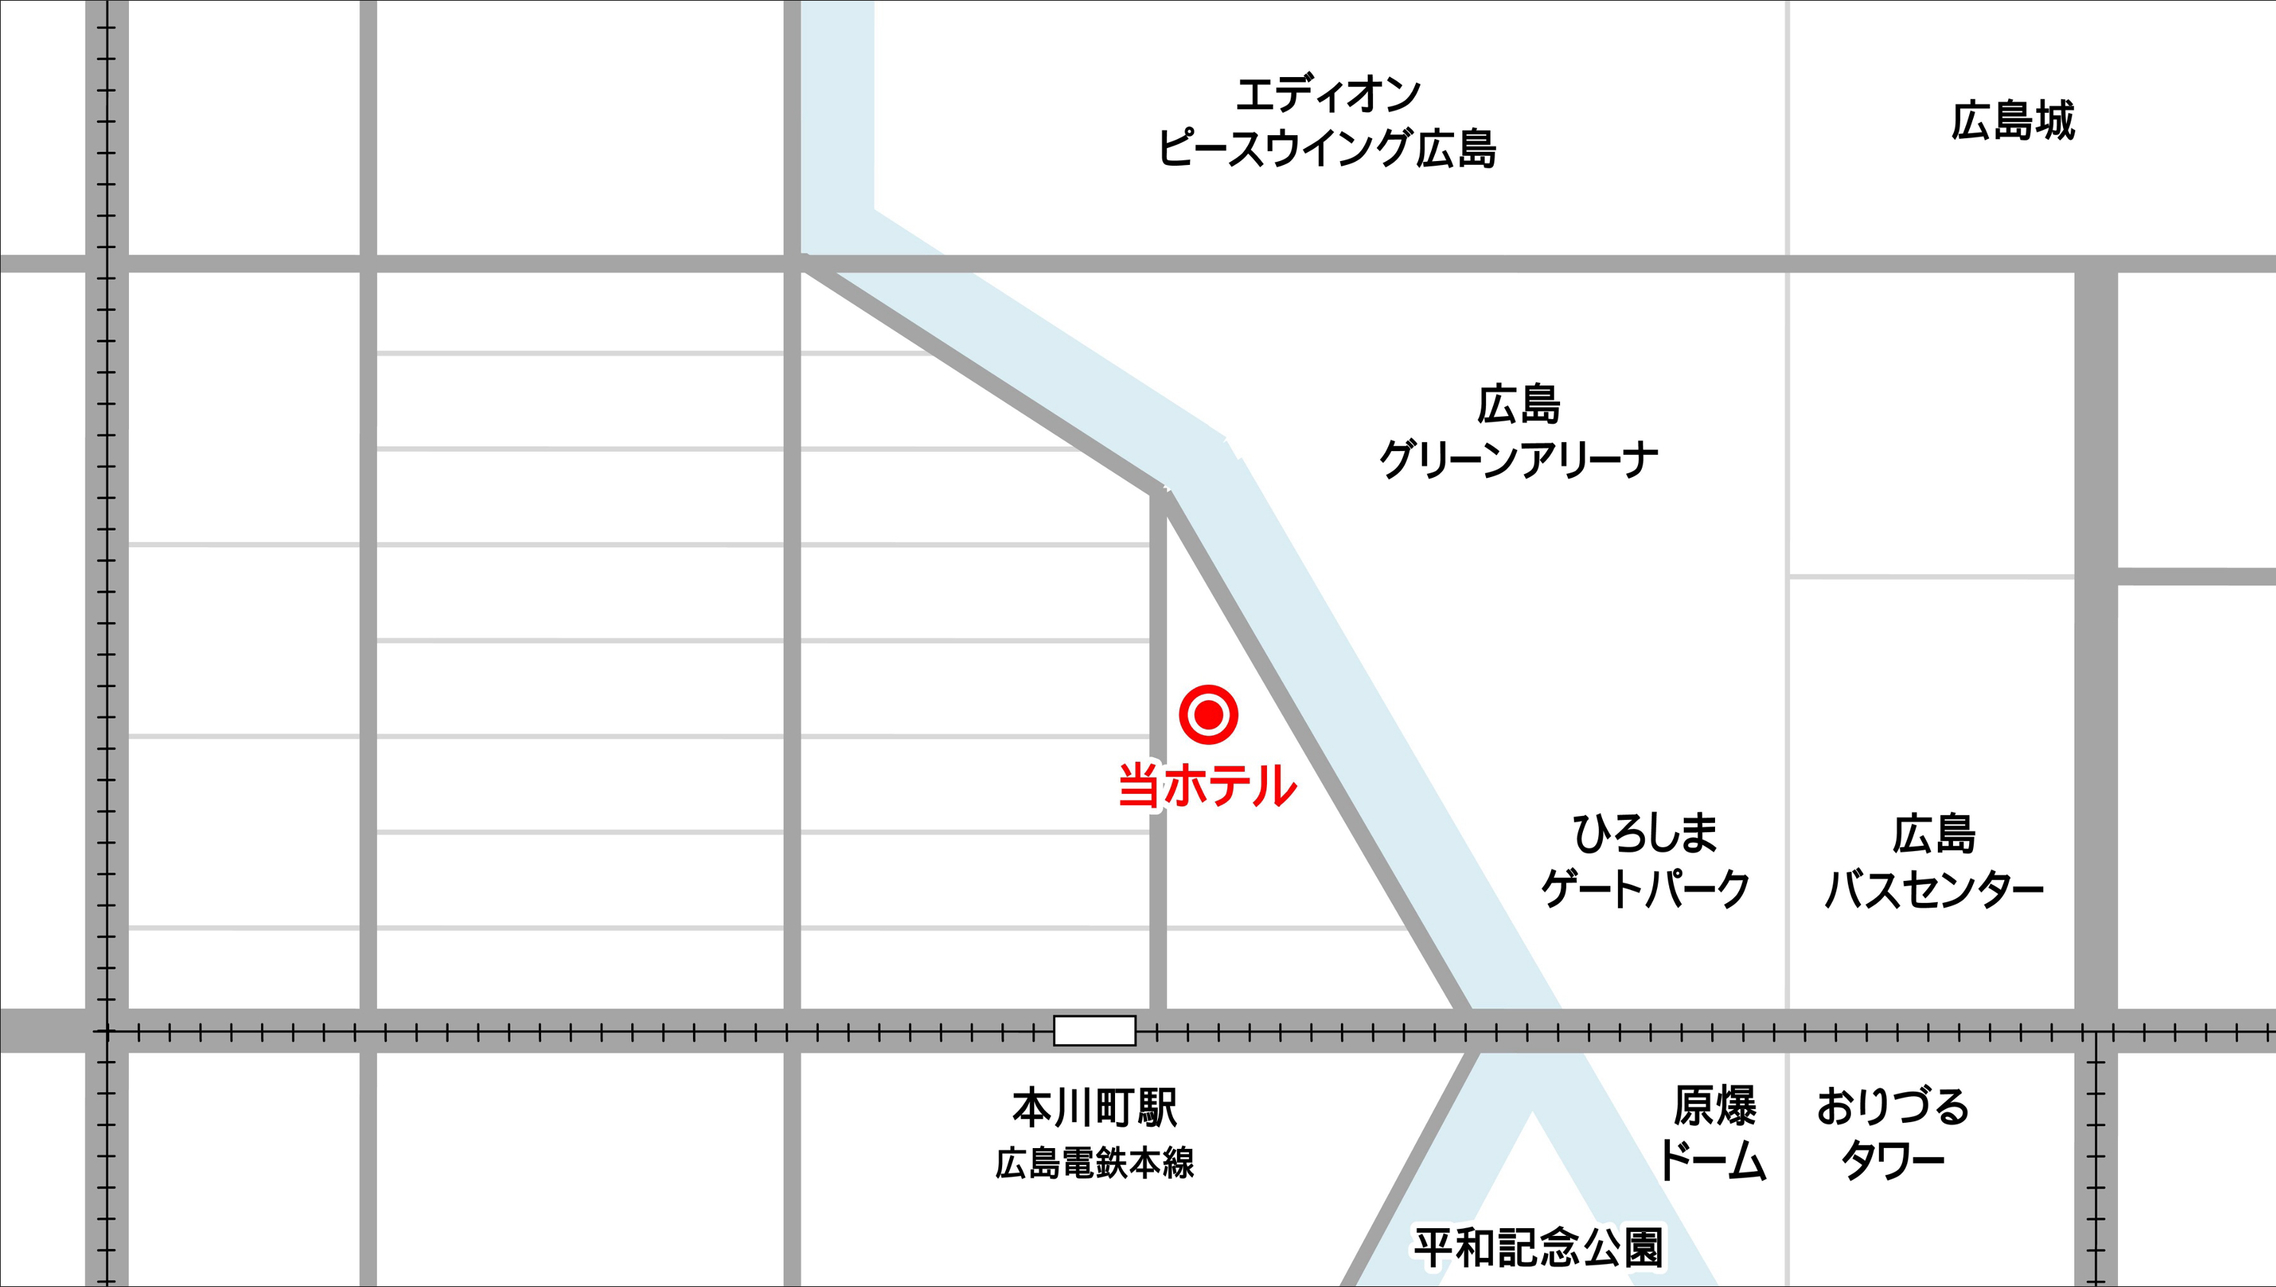 17時からのチェックインで翌日12時までご利用いただけるレイトプラン♪ 広島電鉄本川町駅より徒歩3分